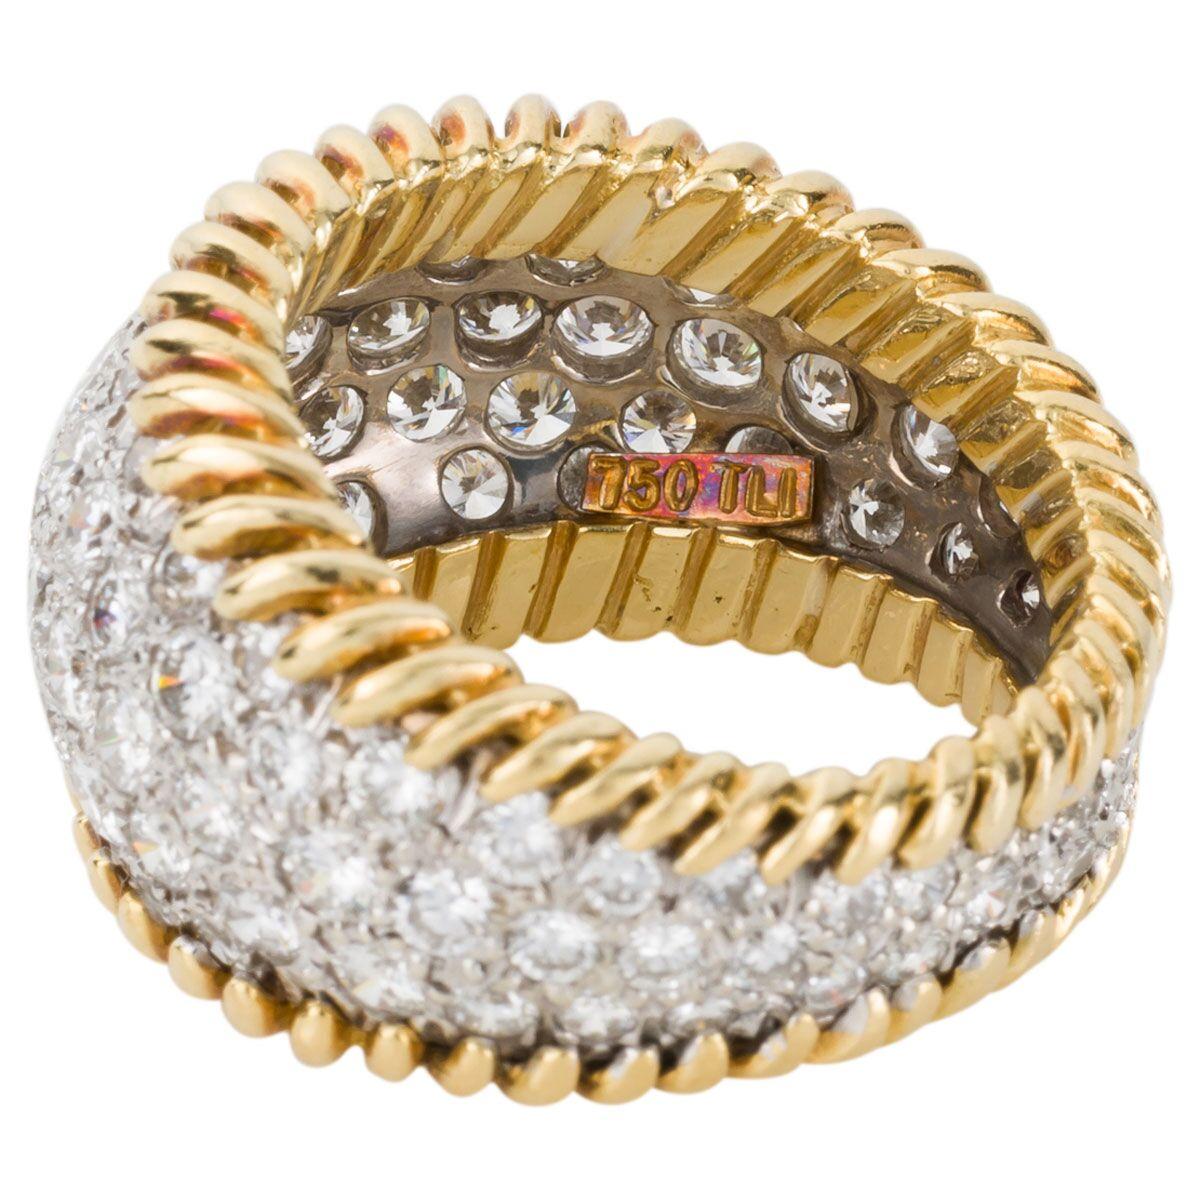 3.00 Carat Diamond Pave Set & 18 Karat Yellow Gold Ring - Ring Size 5.5 2